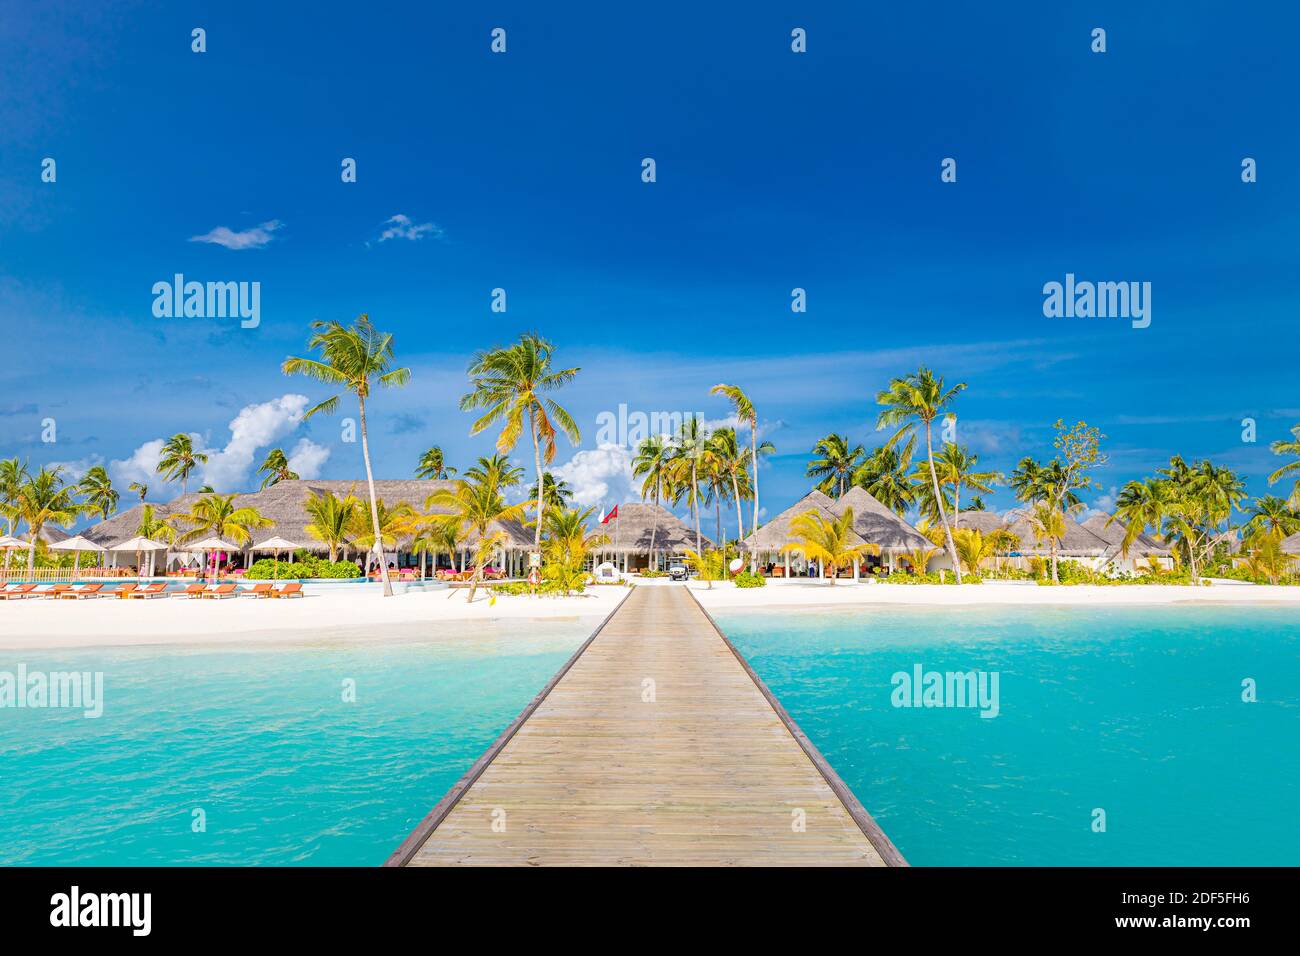 Malediven Paradies Landschaft. Tropische Landschaft, Seeseite mit langen Steg, Wasservillen mit wunderschönem Meer Lagune Strand, tropische Natur Sommerurlaub Stockfoto